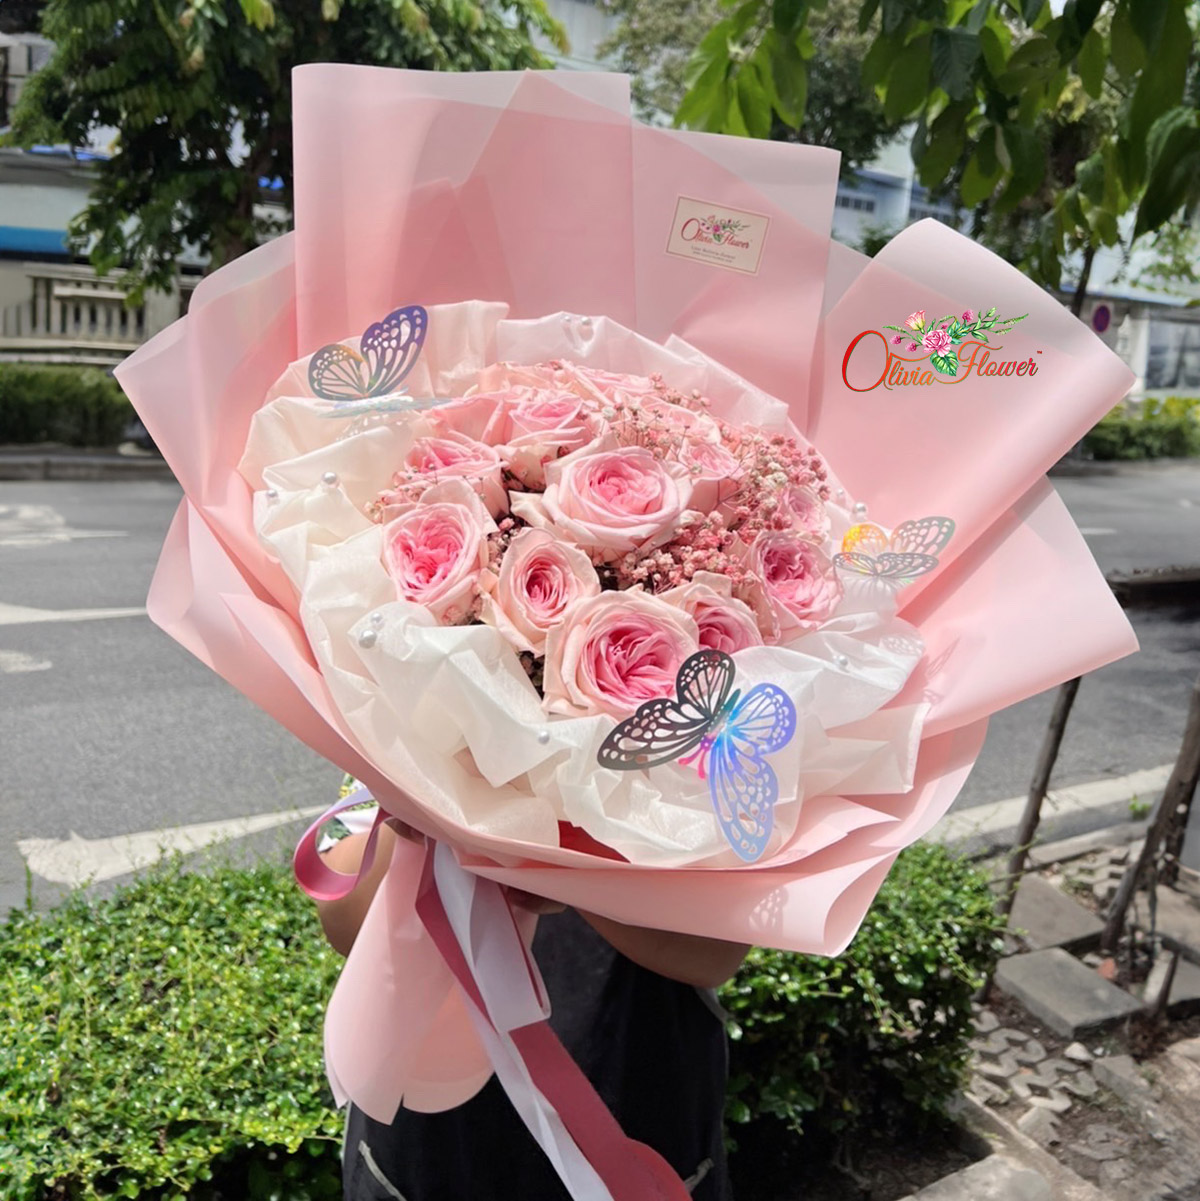 ช่อดอกกุหลาบ ประกอบด้วย ดอกกุหลาบสีชมพูหอม 20 ดอก